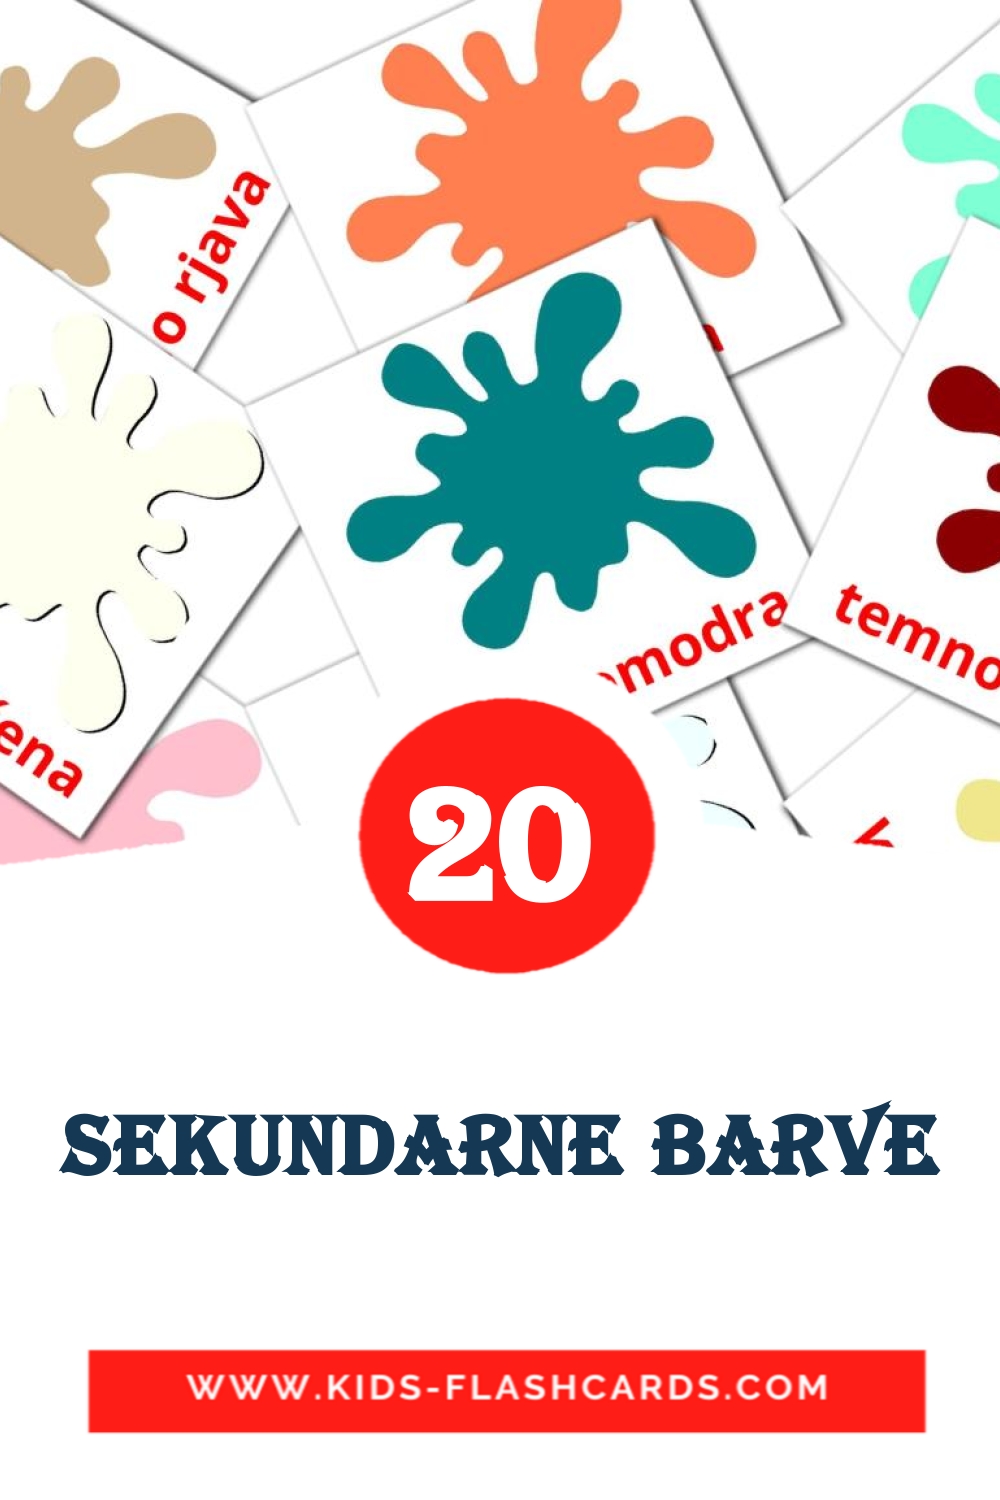 Sekundarne barve на словенском для Детского Сада (20 карточек)